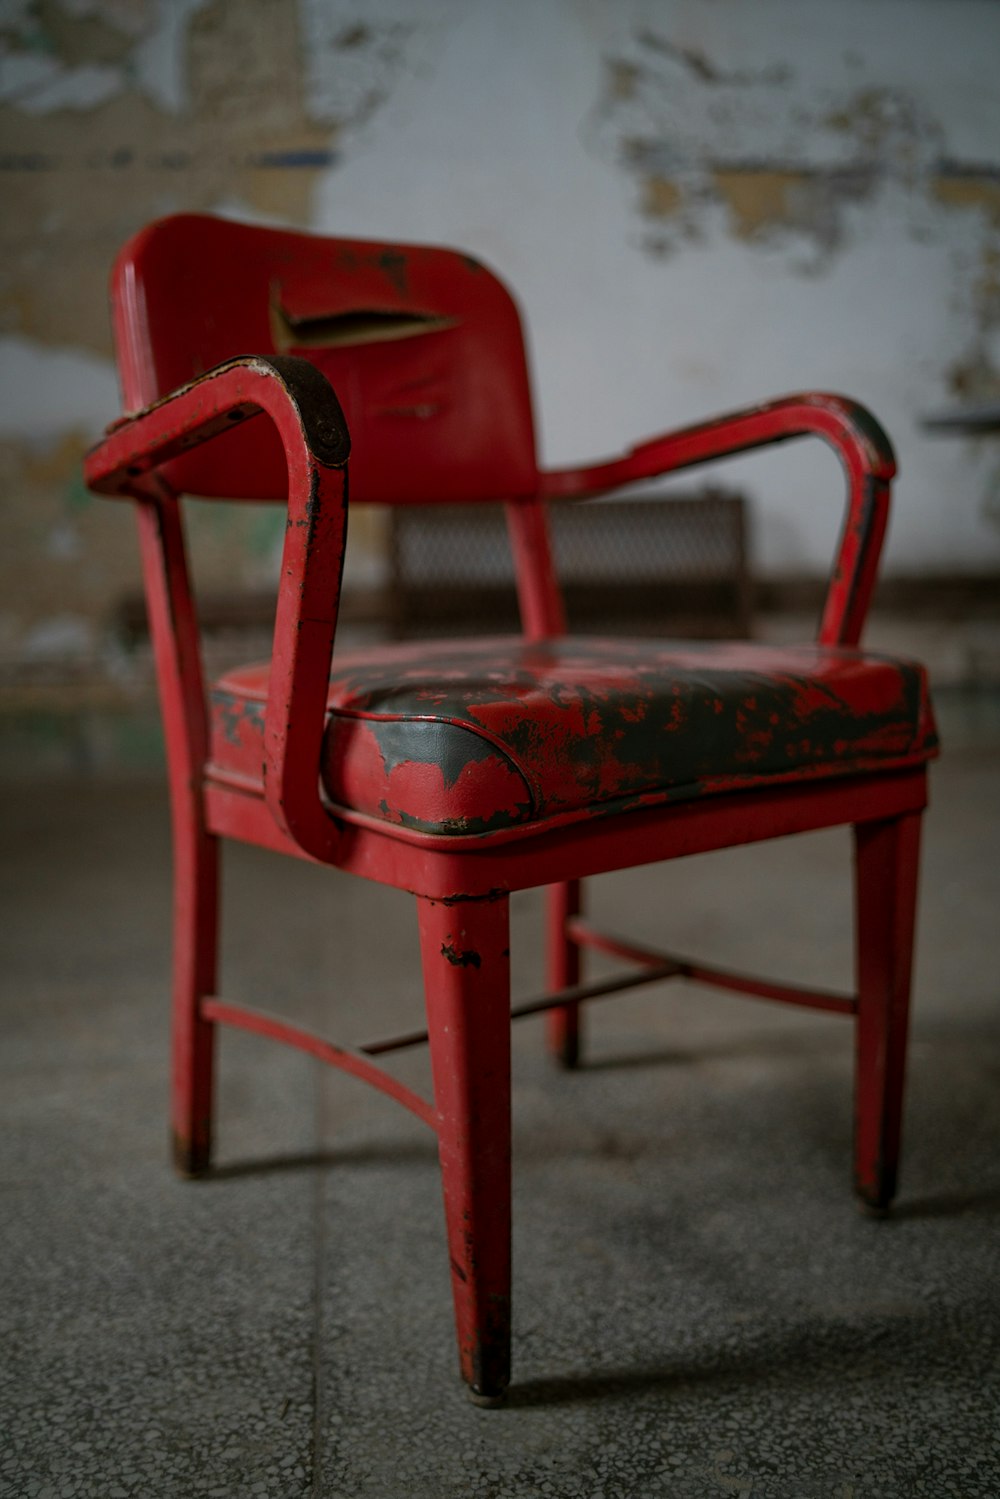 회색 콘크리트 바닥에 빨간 플라스틱 안락 의자